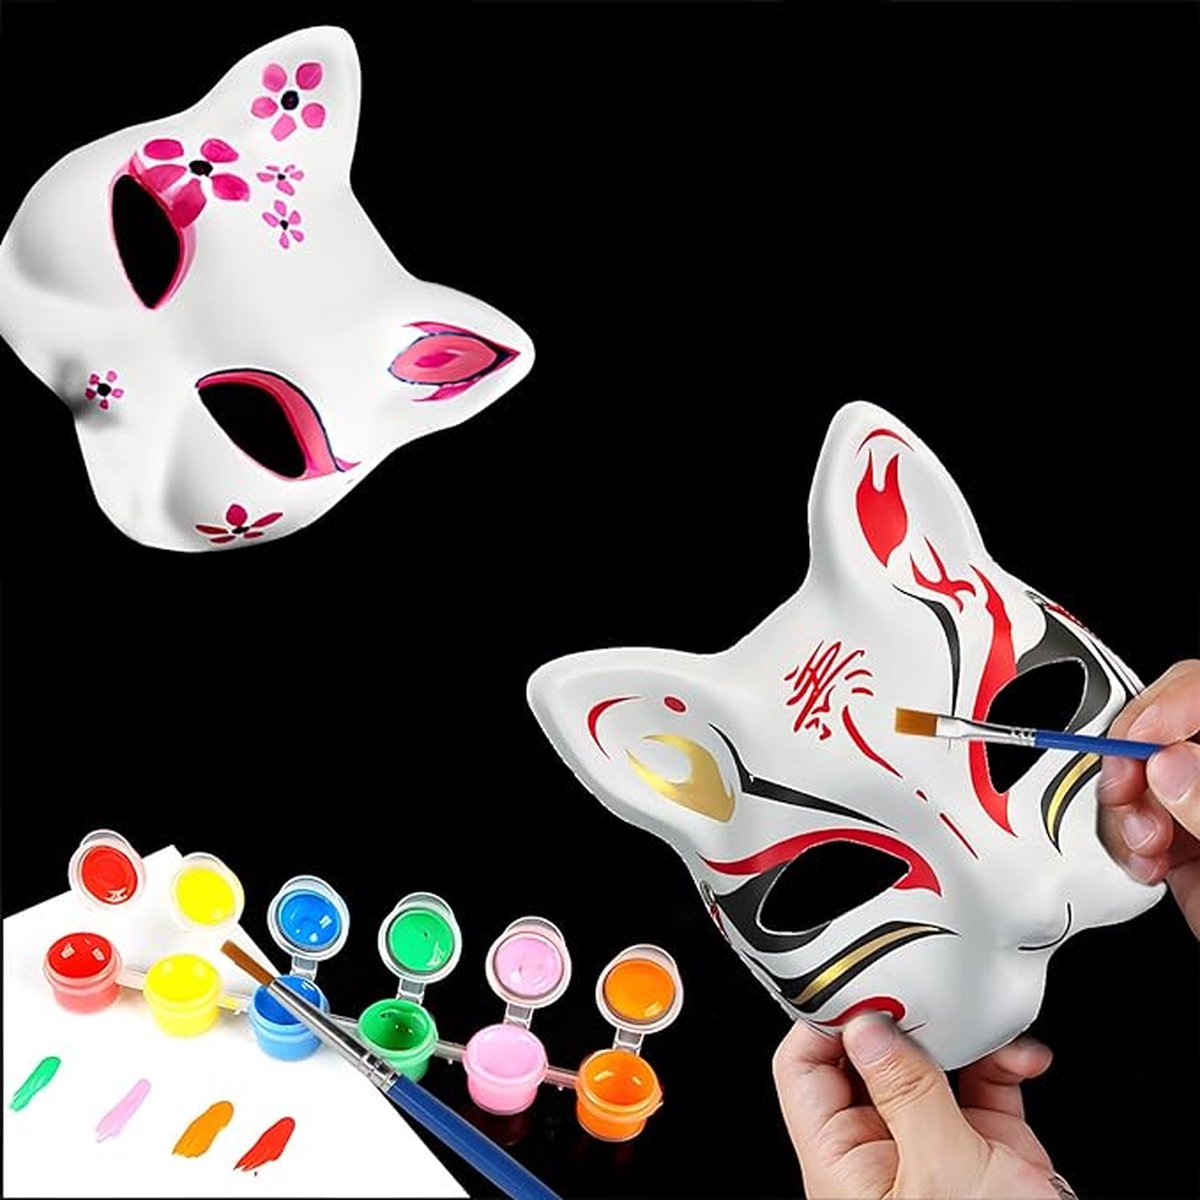 Xinlie Masque Blanc Non Peint, Masques de Bricolage Masques Masques Masques  de Partie de Masques anonymes pour Peindre des Enfants pour Le Carnaval  d'halloween Masque de Conception Peints (10 pièces) : 